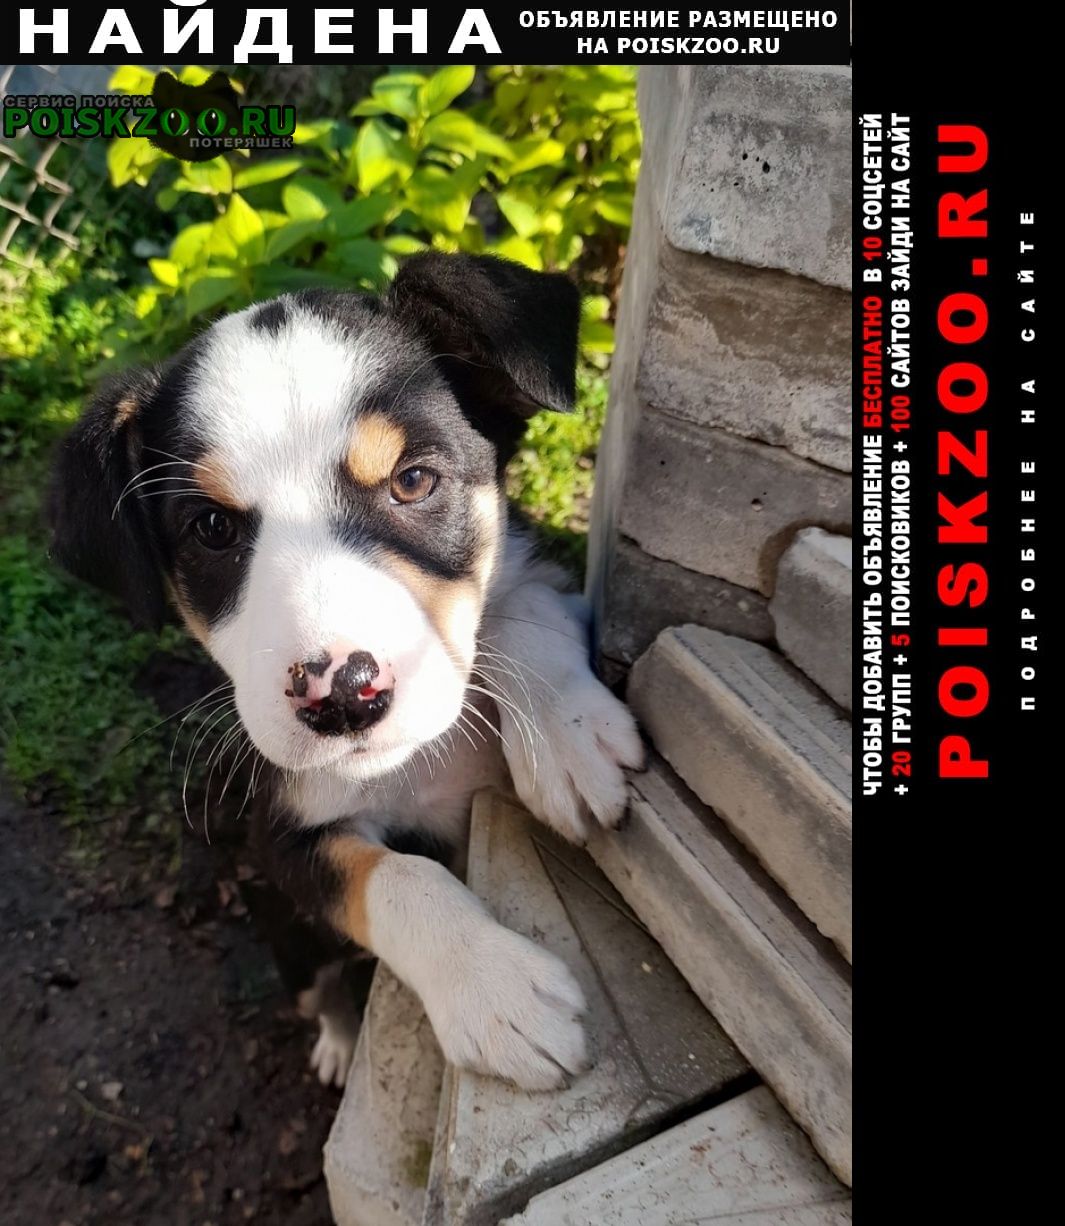 Найдена собака, преданный охранник во двор Краснодар